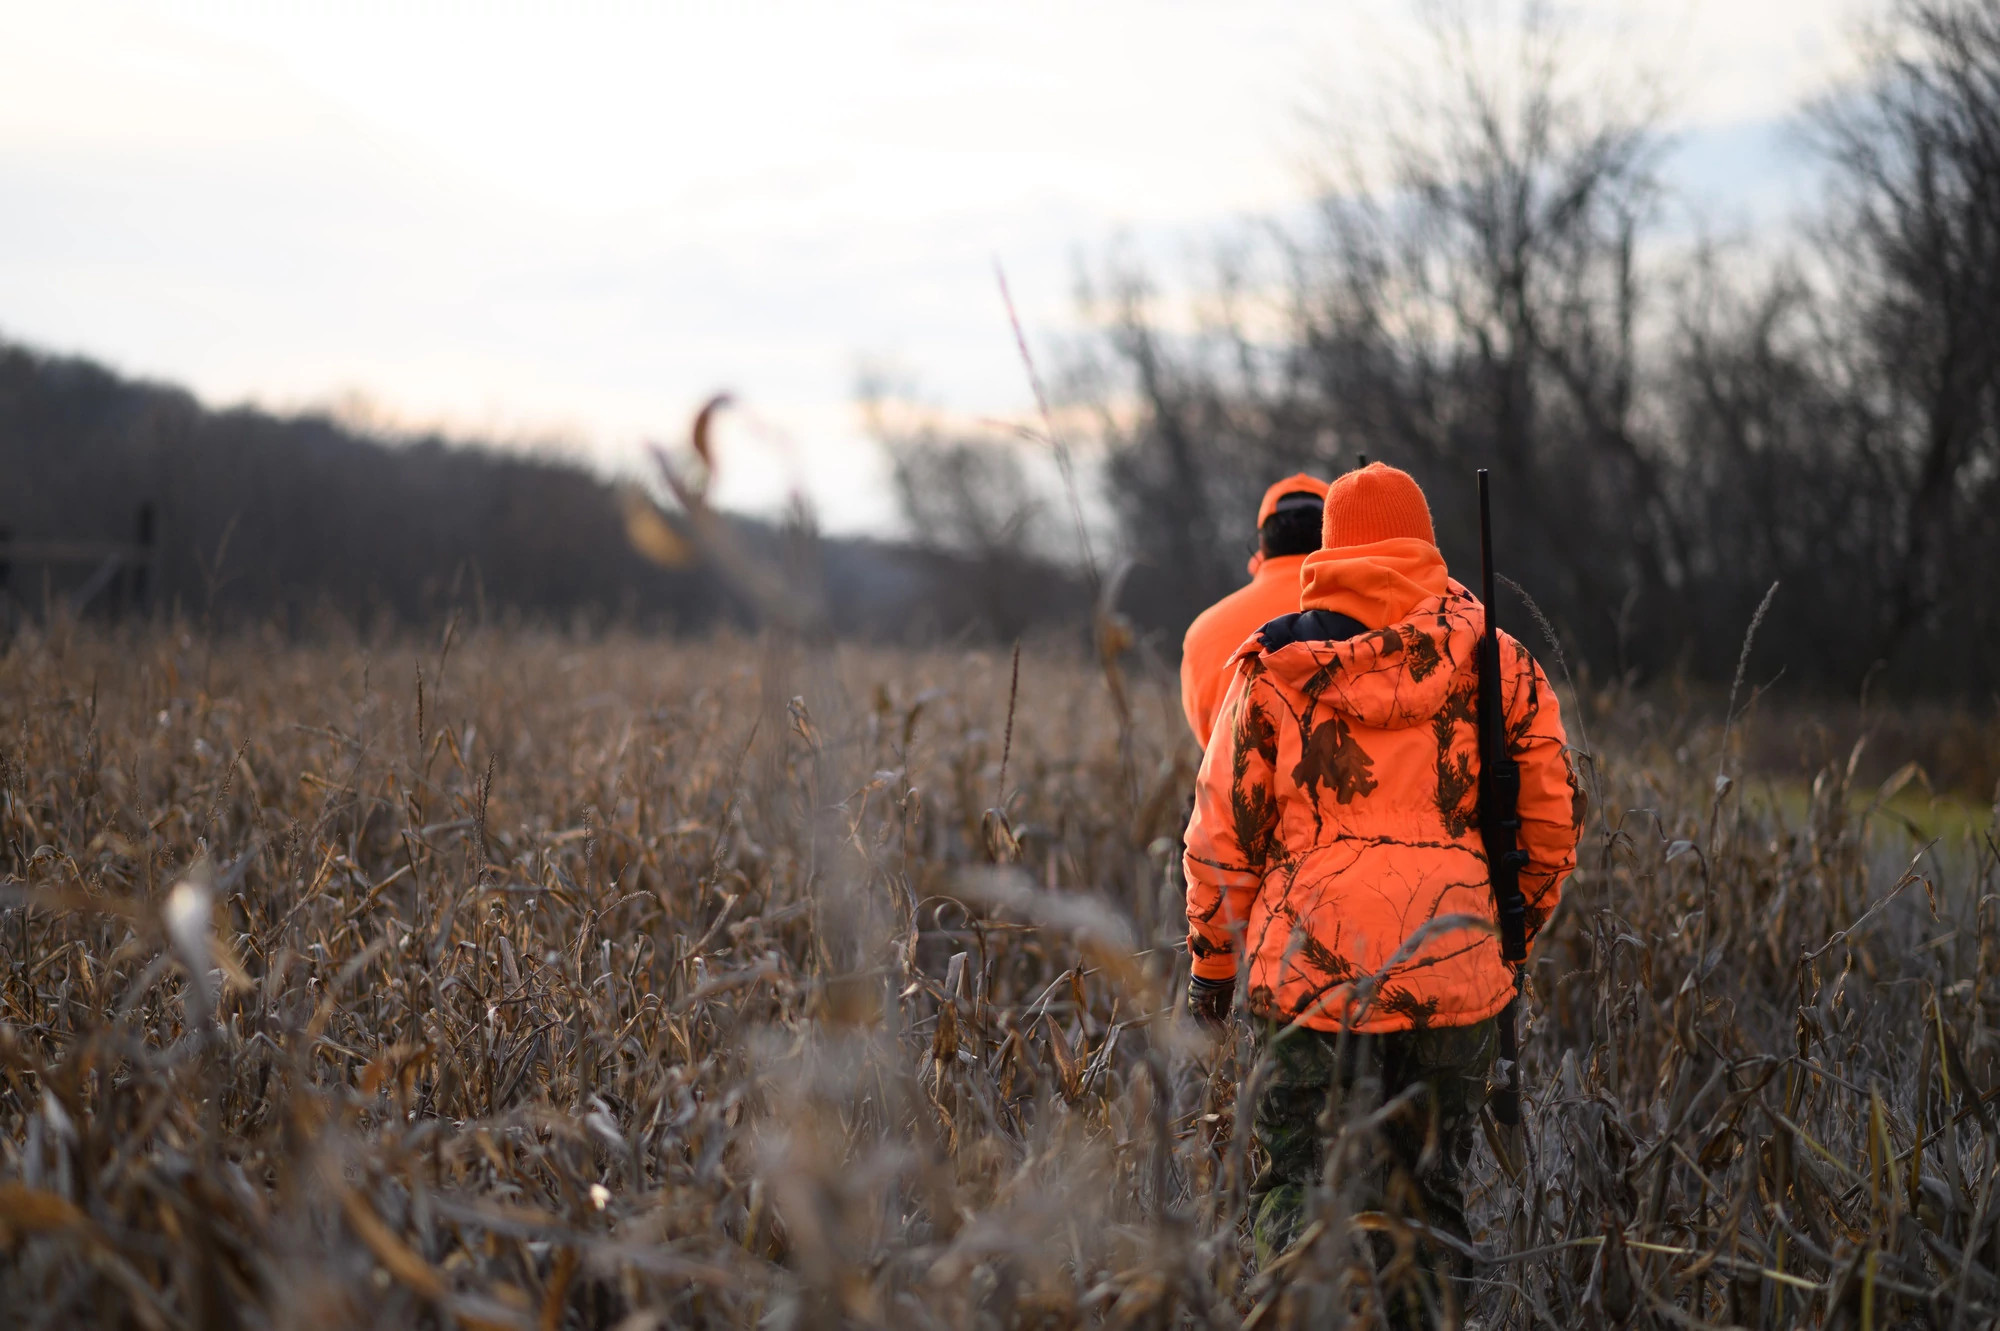 Two hunters walk in a fall field wearing blaze orange, backs to camera.